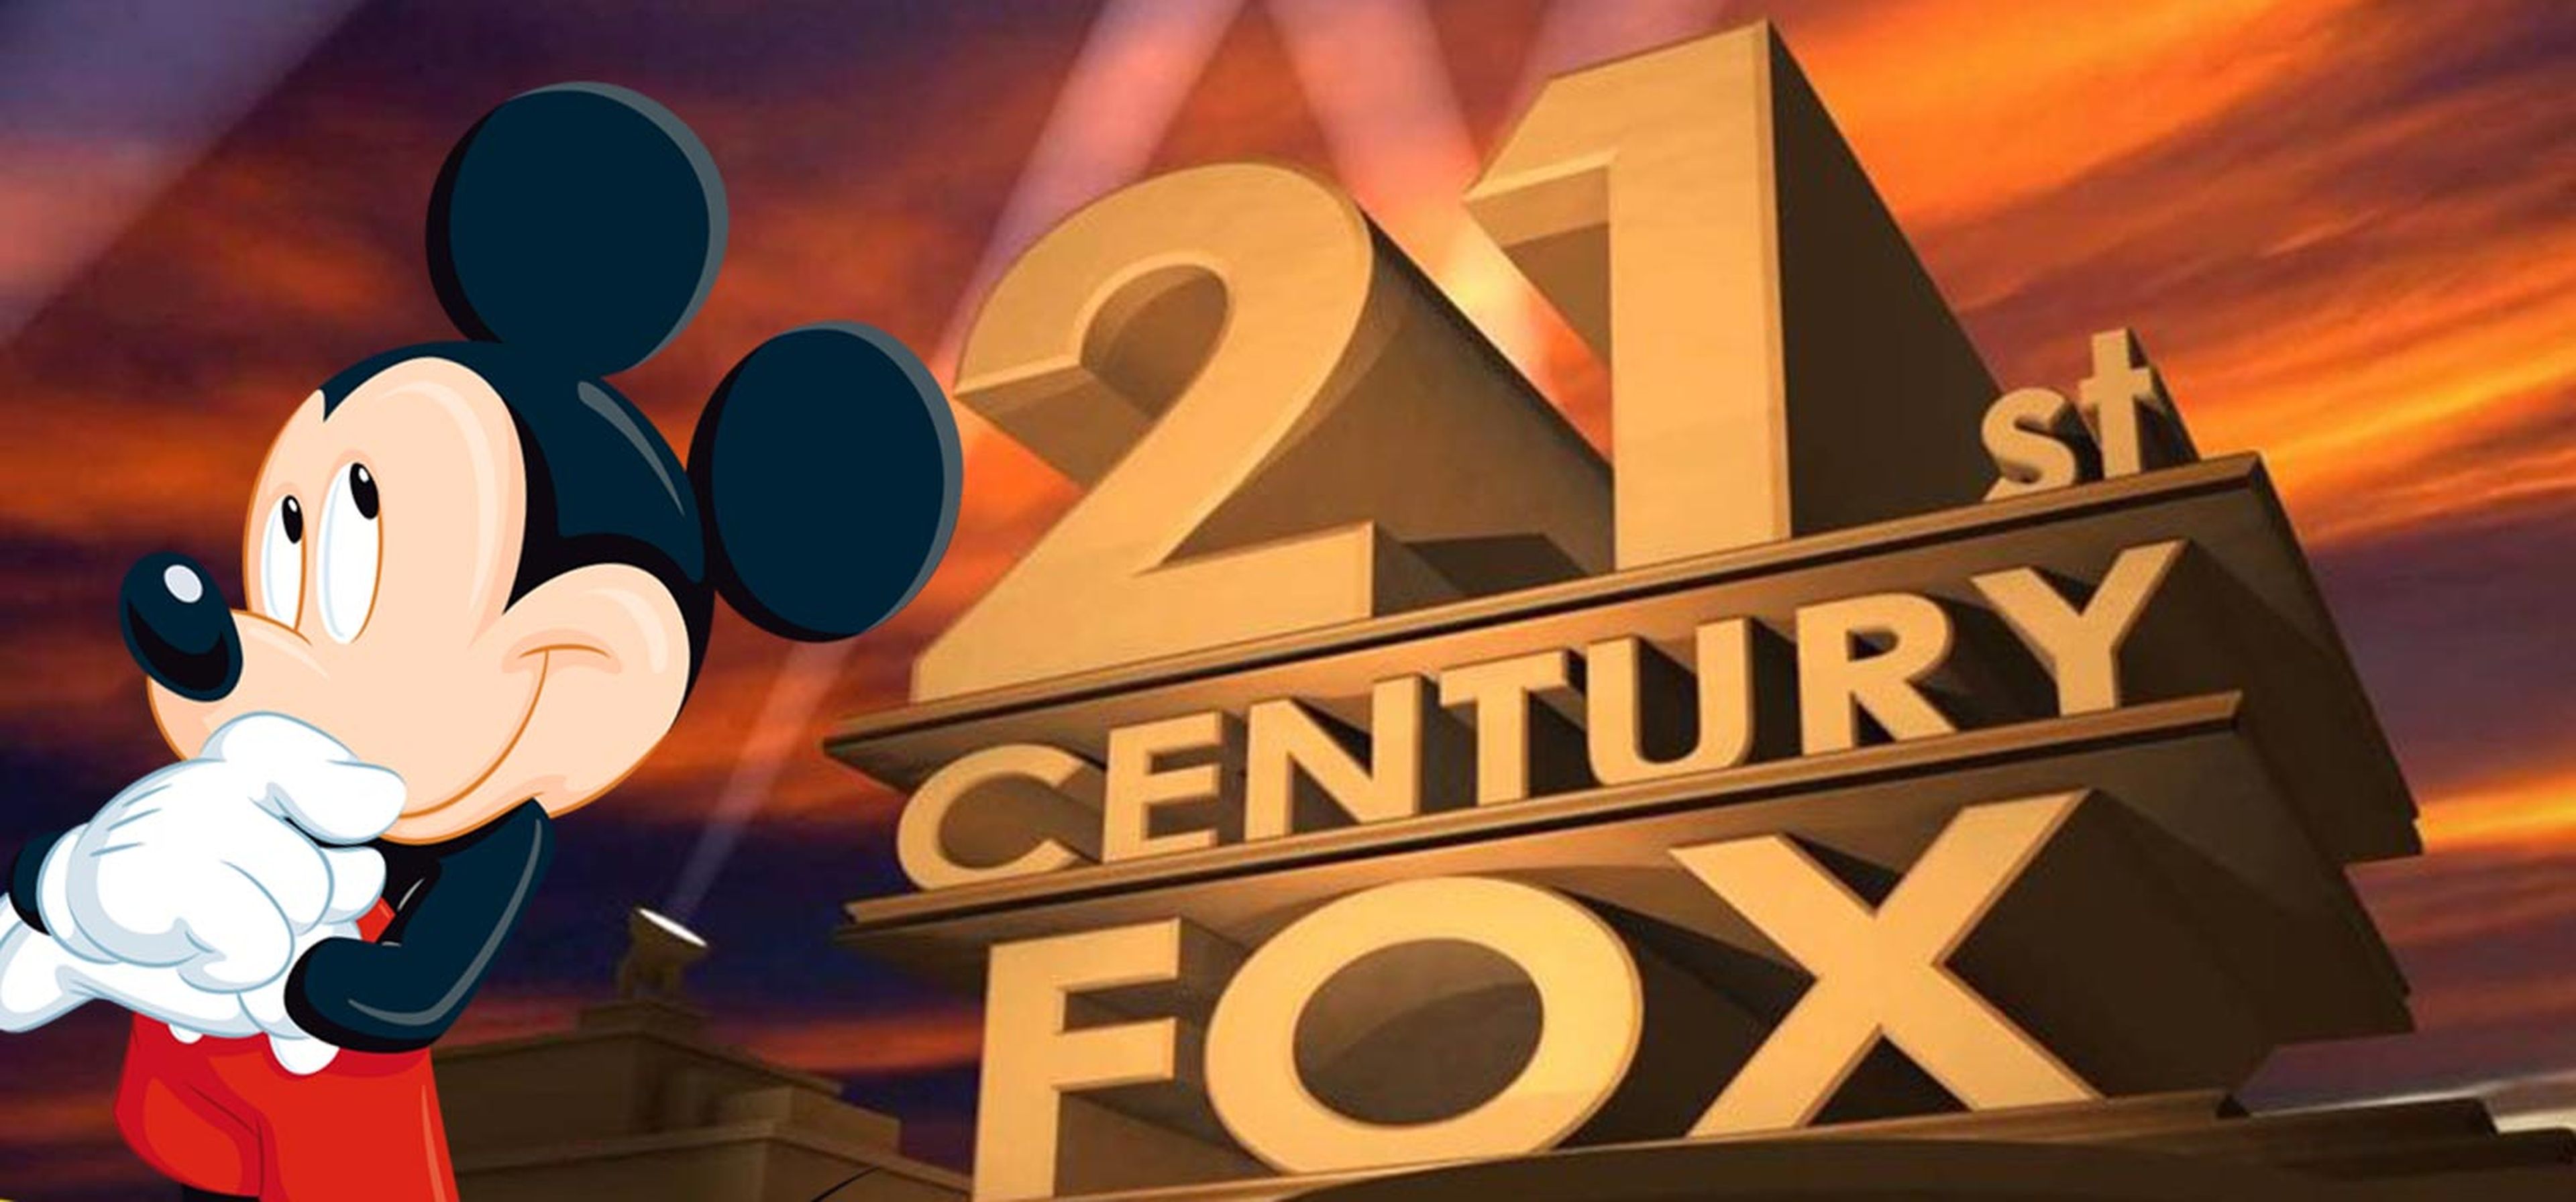 Las propiedades de Fox que va a adquirir Disney con su compra